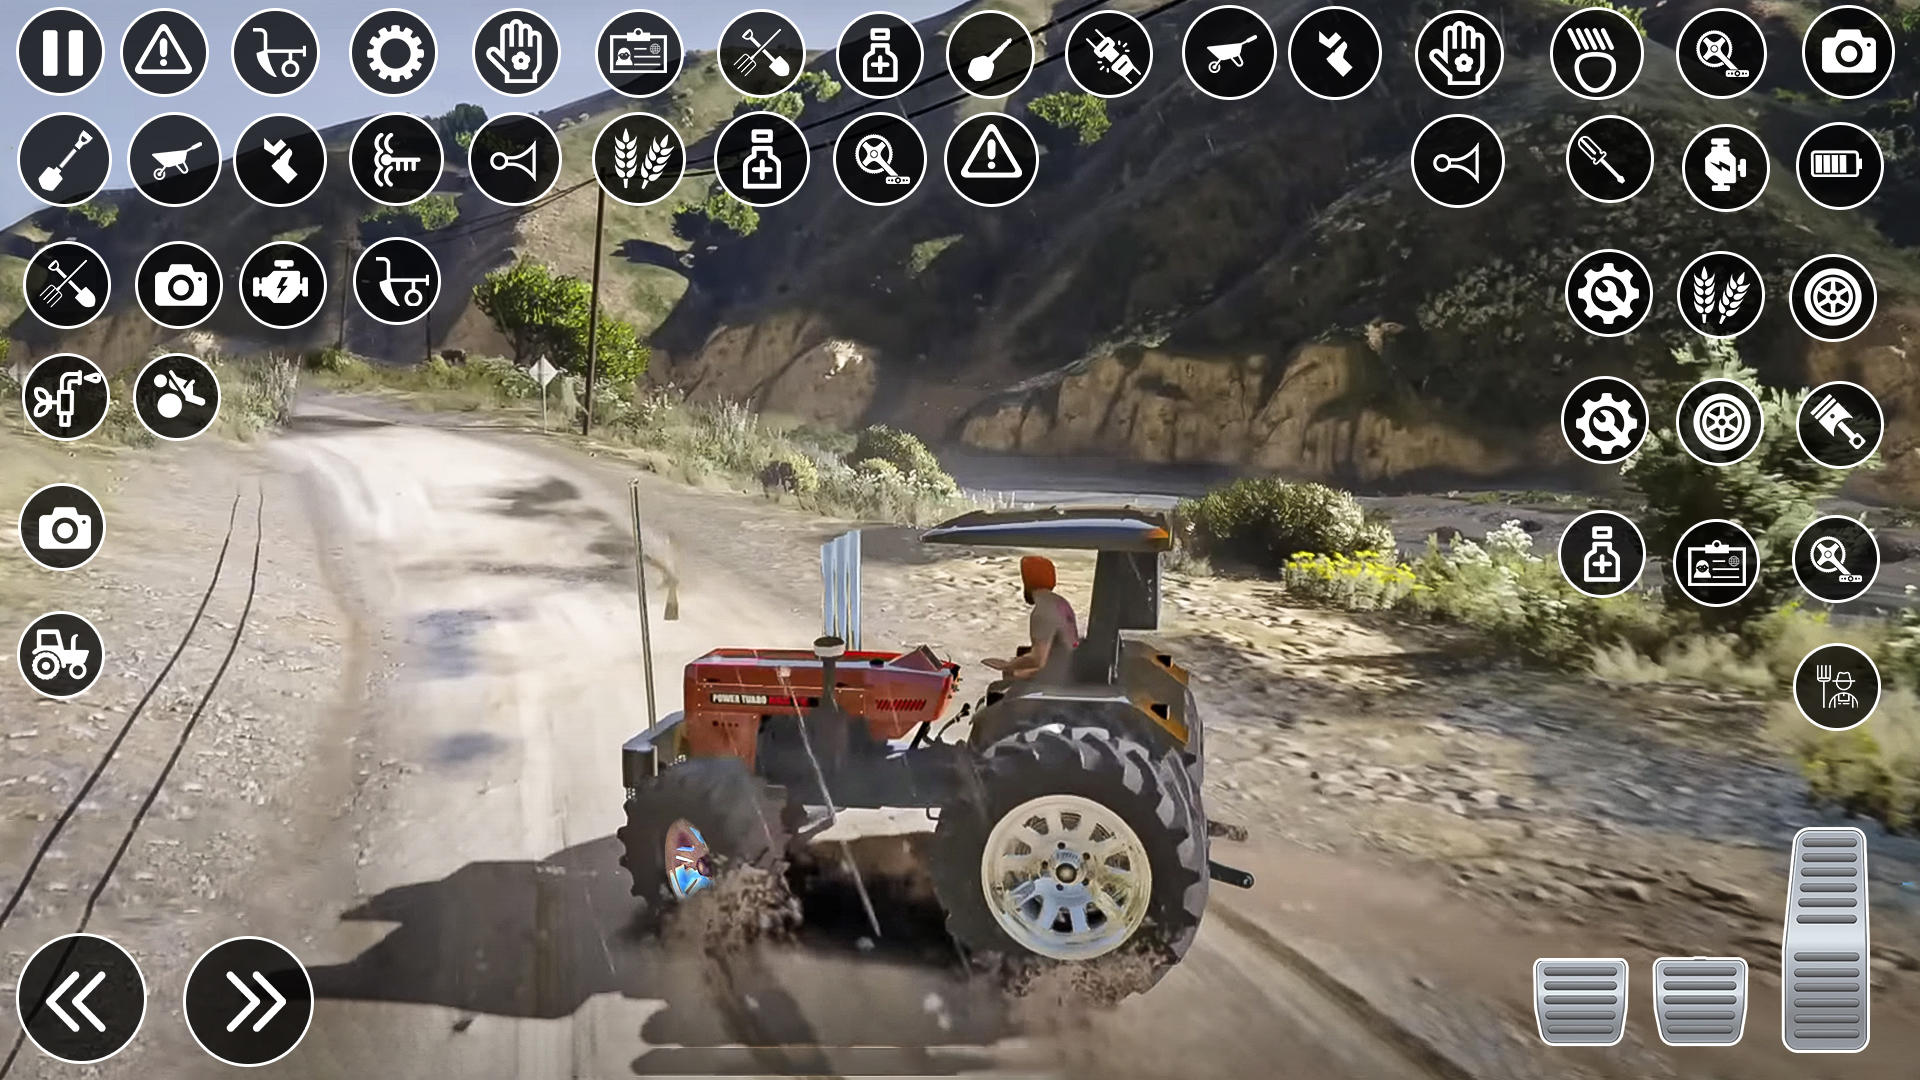 Screenshot 1 of Permainan Pertanian Traktor India 3D 0.2